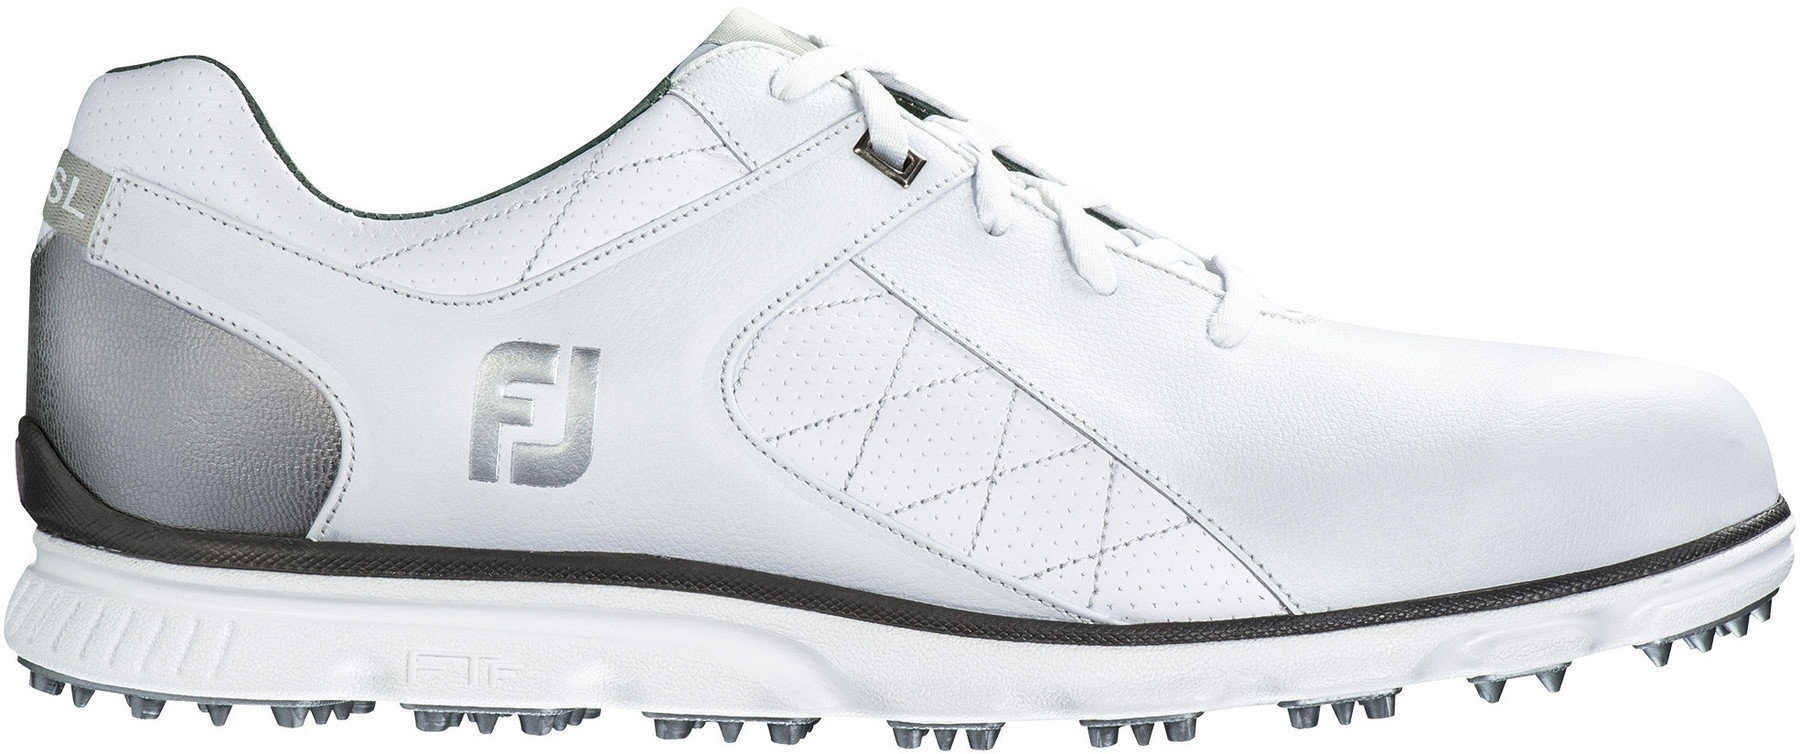 Chaussures de golf pour hommes Footjoy Pro SL Chaussures de Golf pour Hommes White/Silver US 9